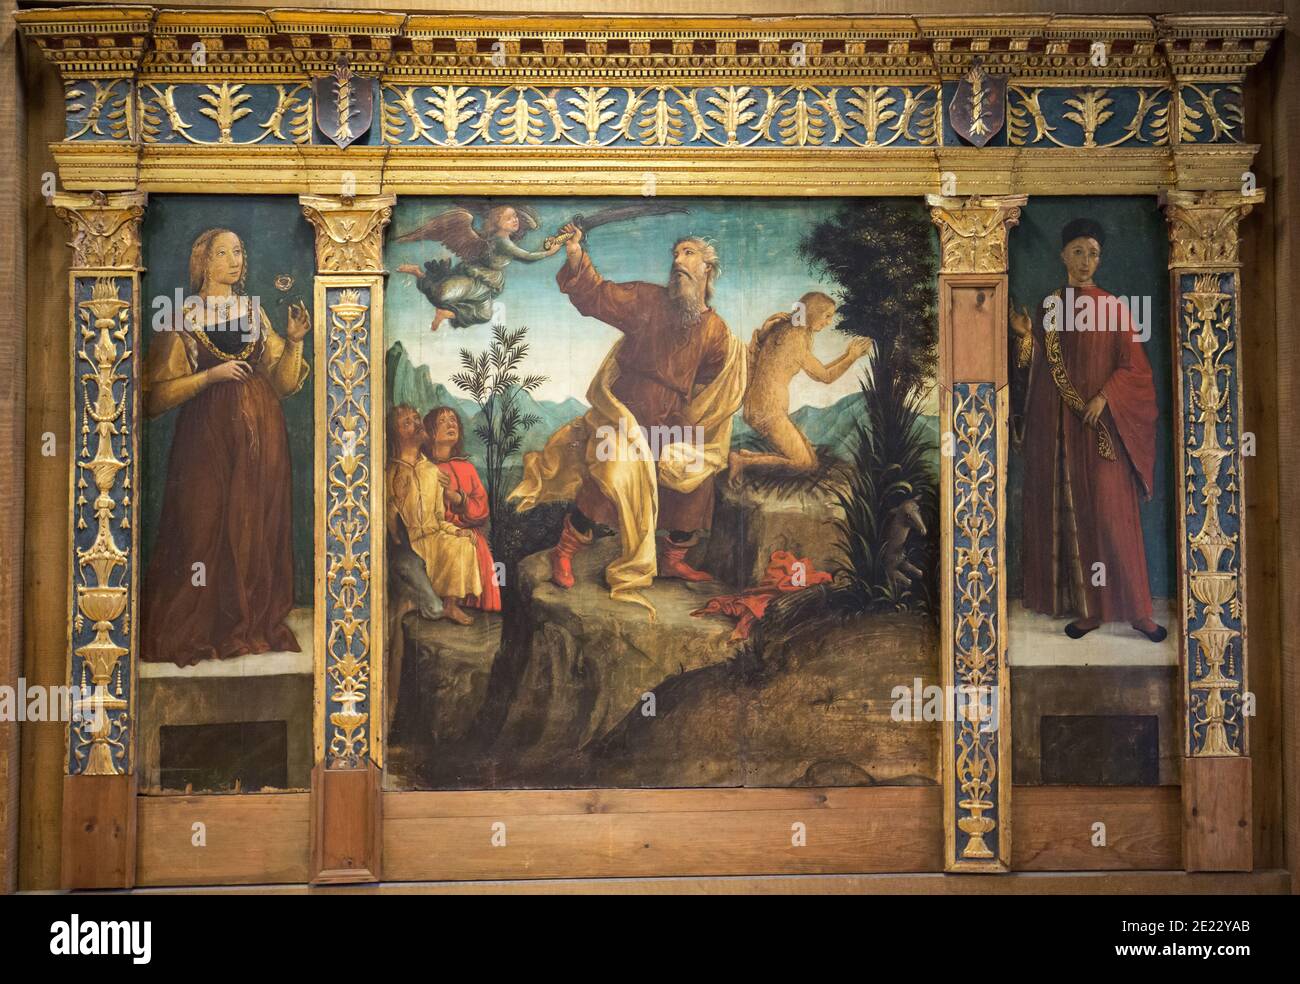 Liberale da Verona - le sacrifice d'Isaac avec deux donateurs connus sous le nom de l'altarpiece de Miniscalchi dans le musée de Castelvecchio. Vérone, Italie Banque D'Images